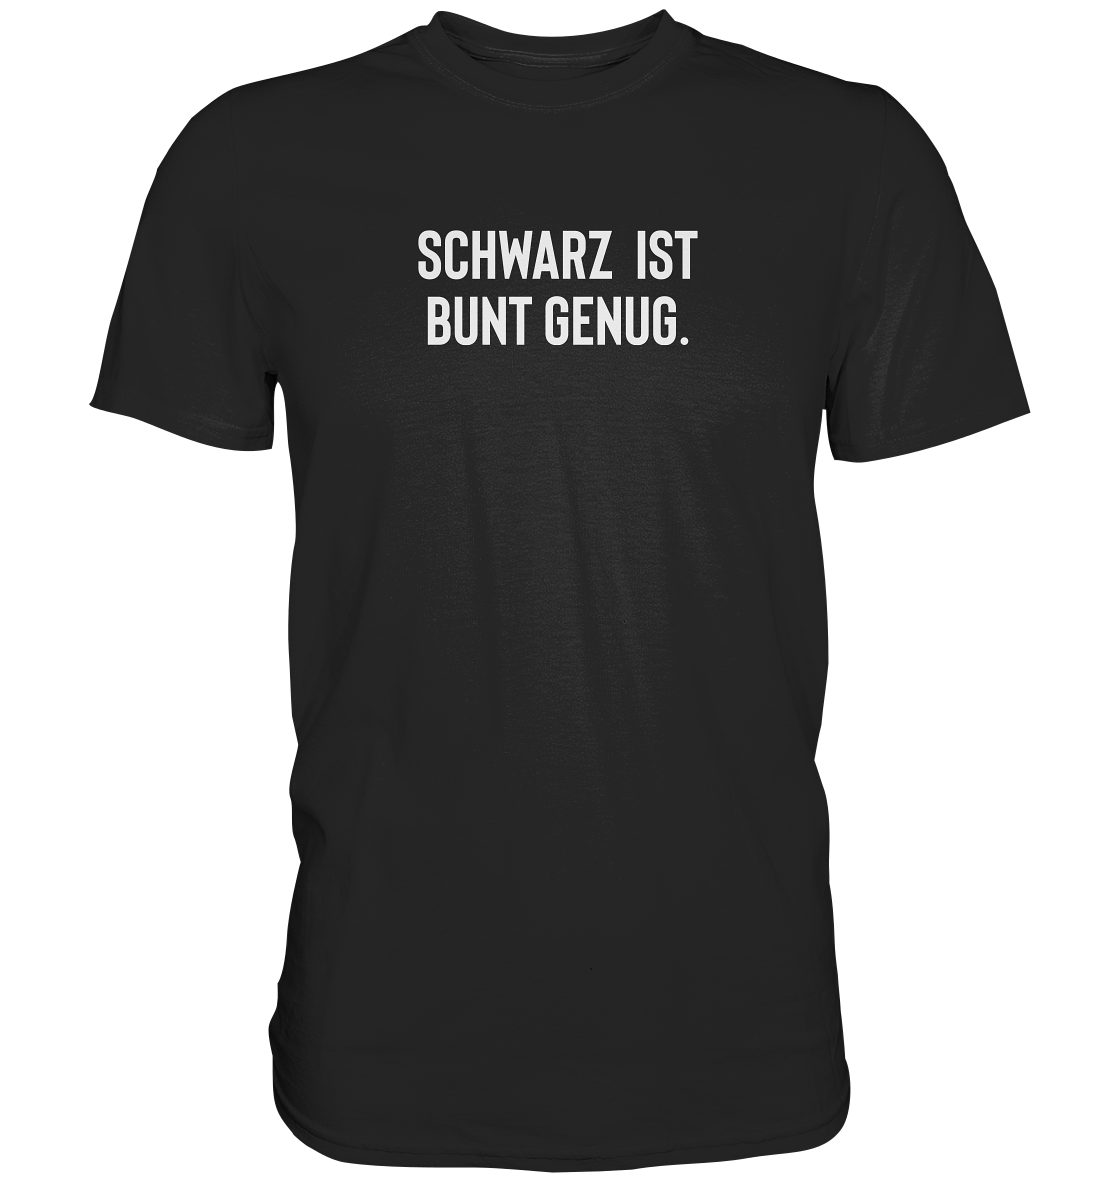 Farbbrillianz in Hohe Bedruckt T-Shirt Hohe Waschbeständigkeit, RABUMSEL Deutschland,